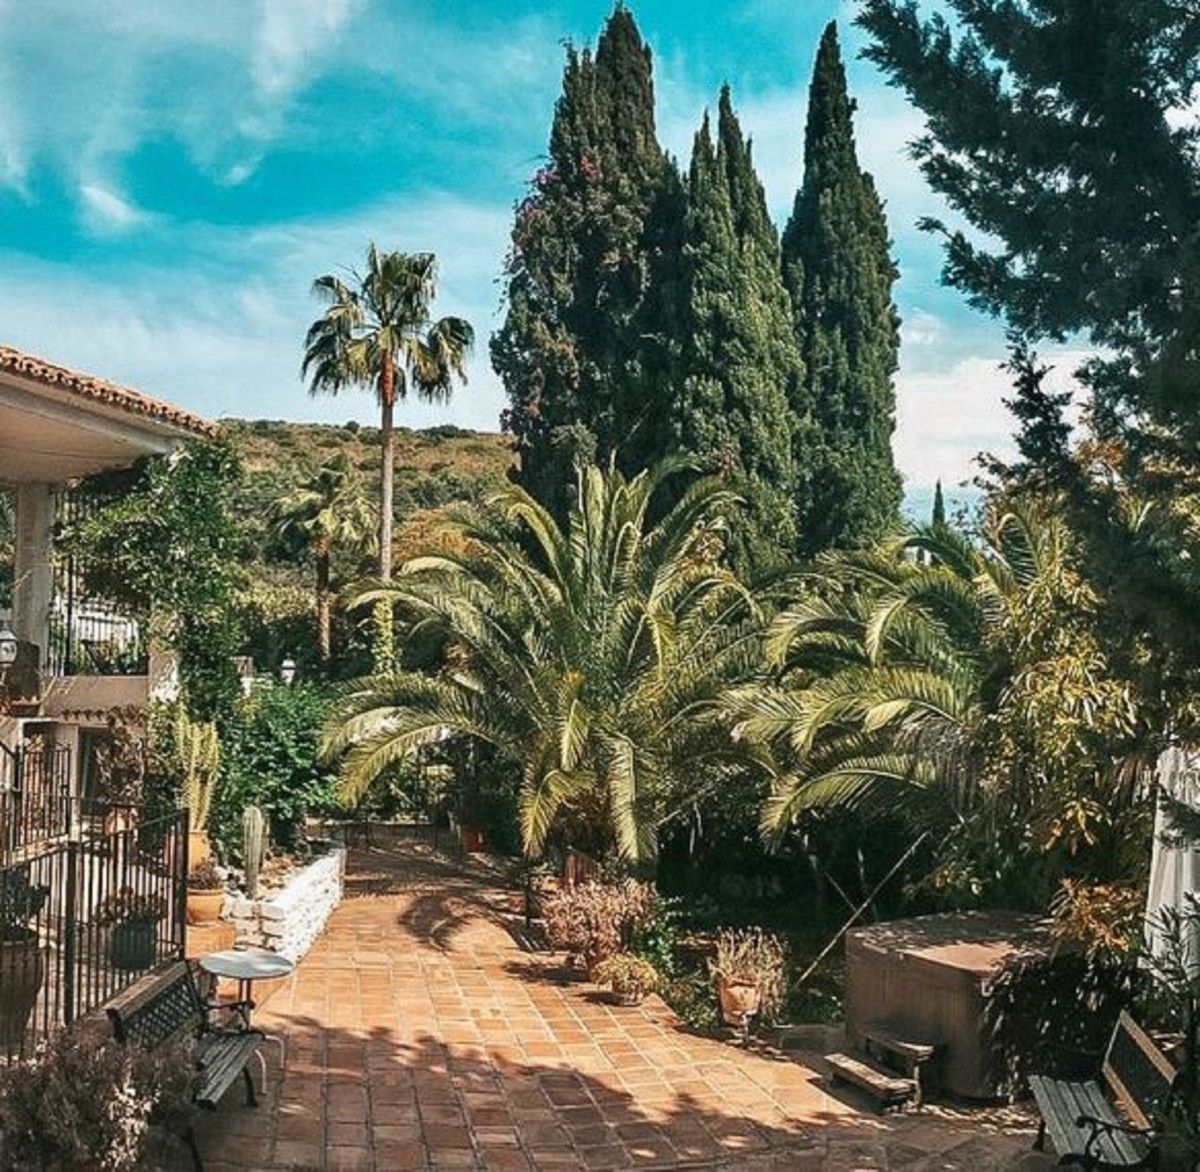 						 Hotel
													en venta 
																			 en Marbella
					